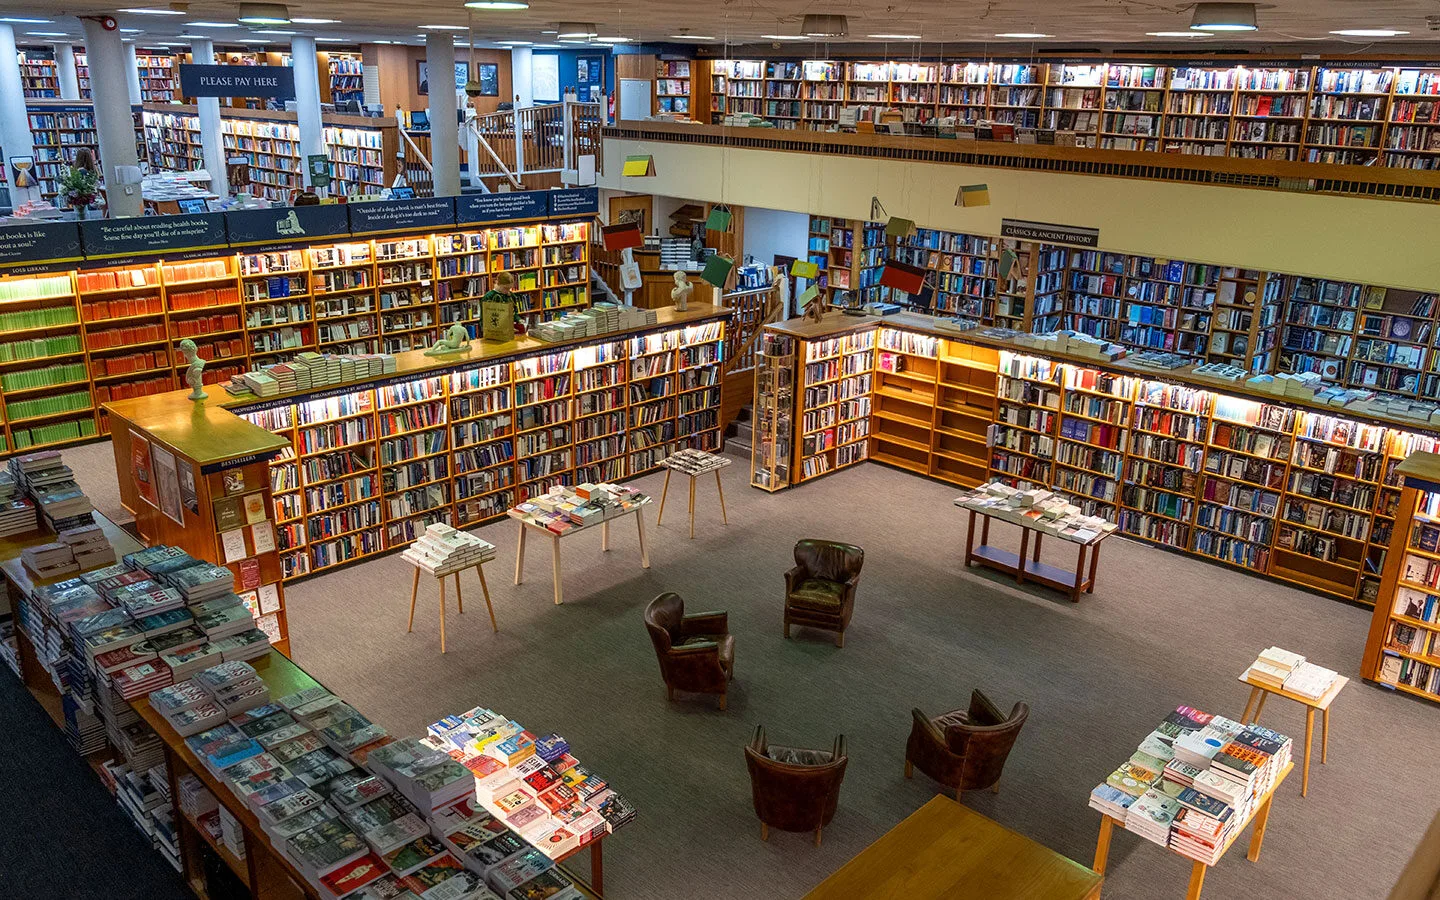 The vast Norrington Room at Blackwell's bookshop